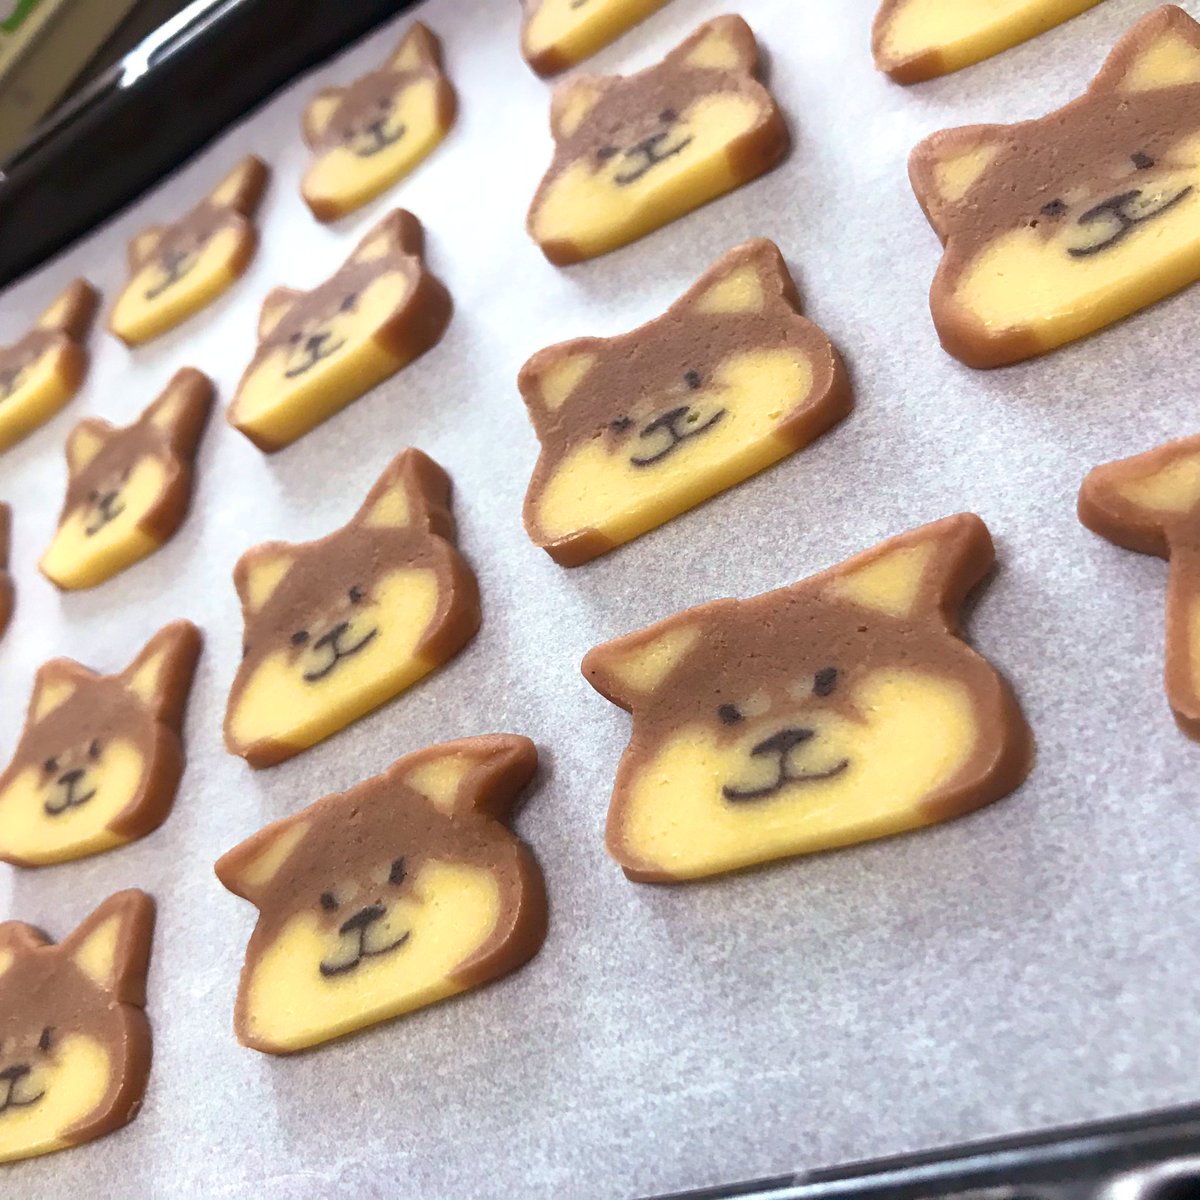 Twitter 上的 シン M Myhobbies 初めまして 柴犬クッキー作ってみたいのですが もしよろしければ組み立て方を教えていただけませんか このクッキー可愛すぎます Twitter